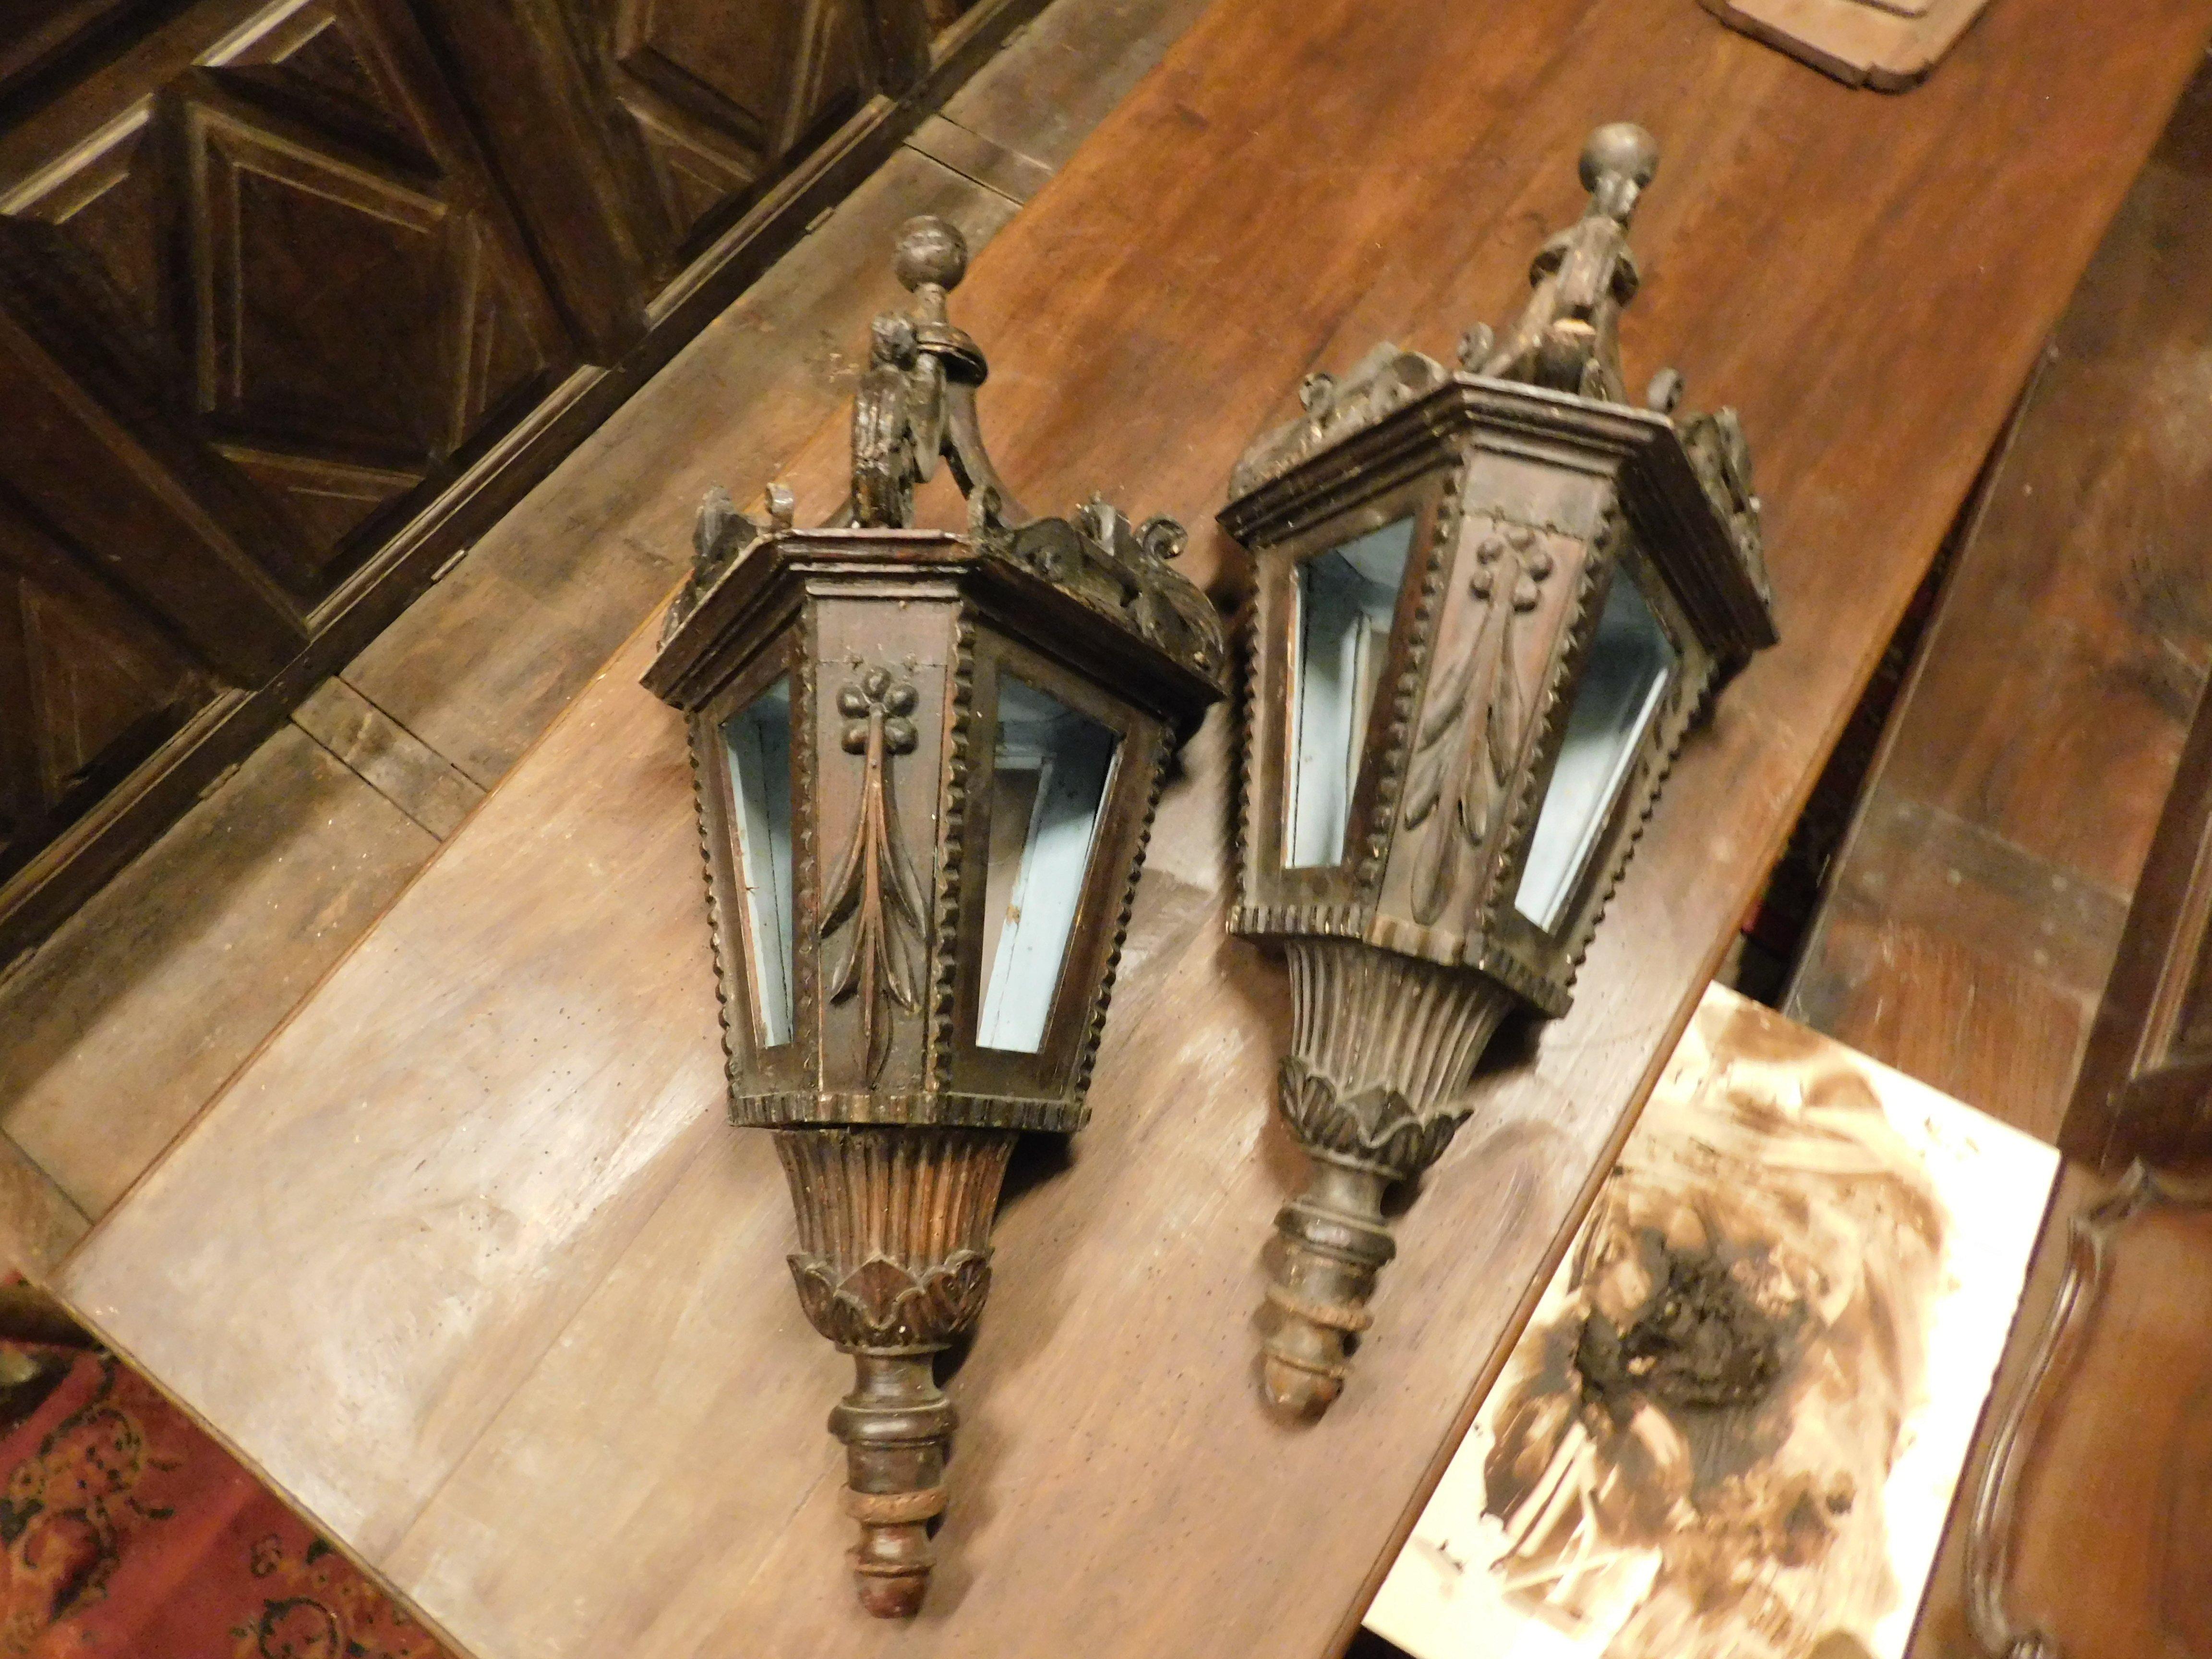 Paar antike Lampen, Lampen ohne Stangen, aus massivem Holz geschnitzt, dann lackiert und bemalt, wurden für Prozessionen oder für den Gebrauch im Inneren einer Kirche der Zeit verwendet, die im 19. Jahrhundert in Italien gebaut wurde.
Sie können zu